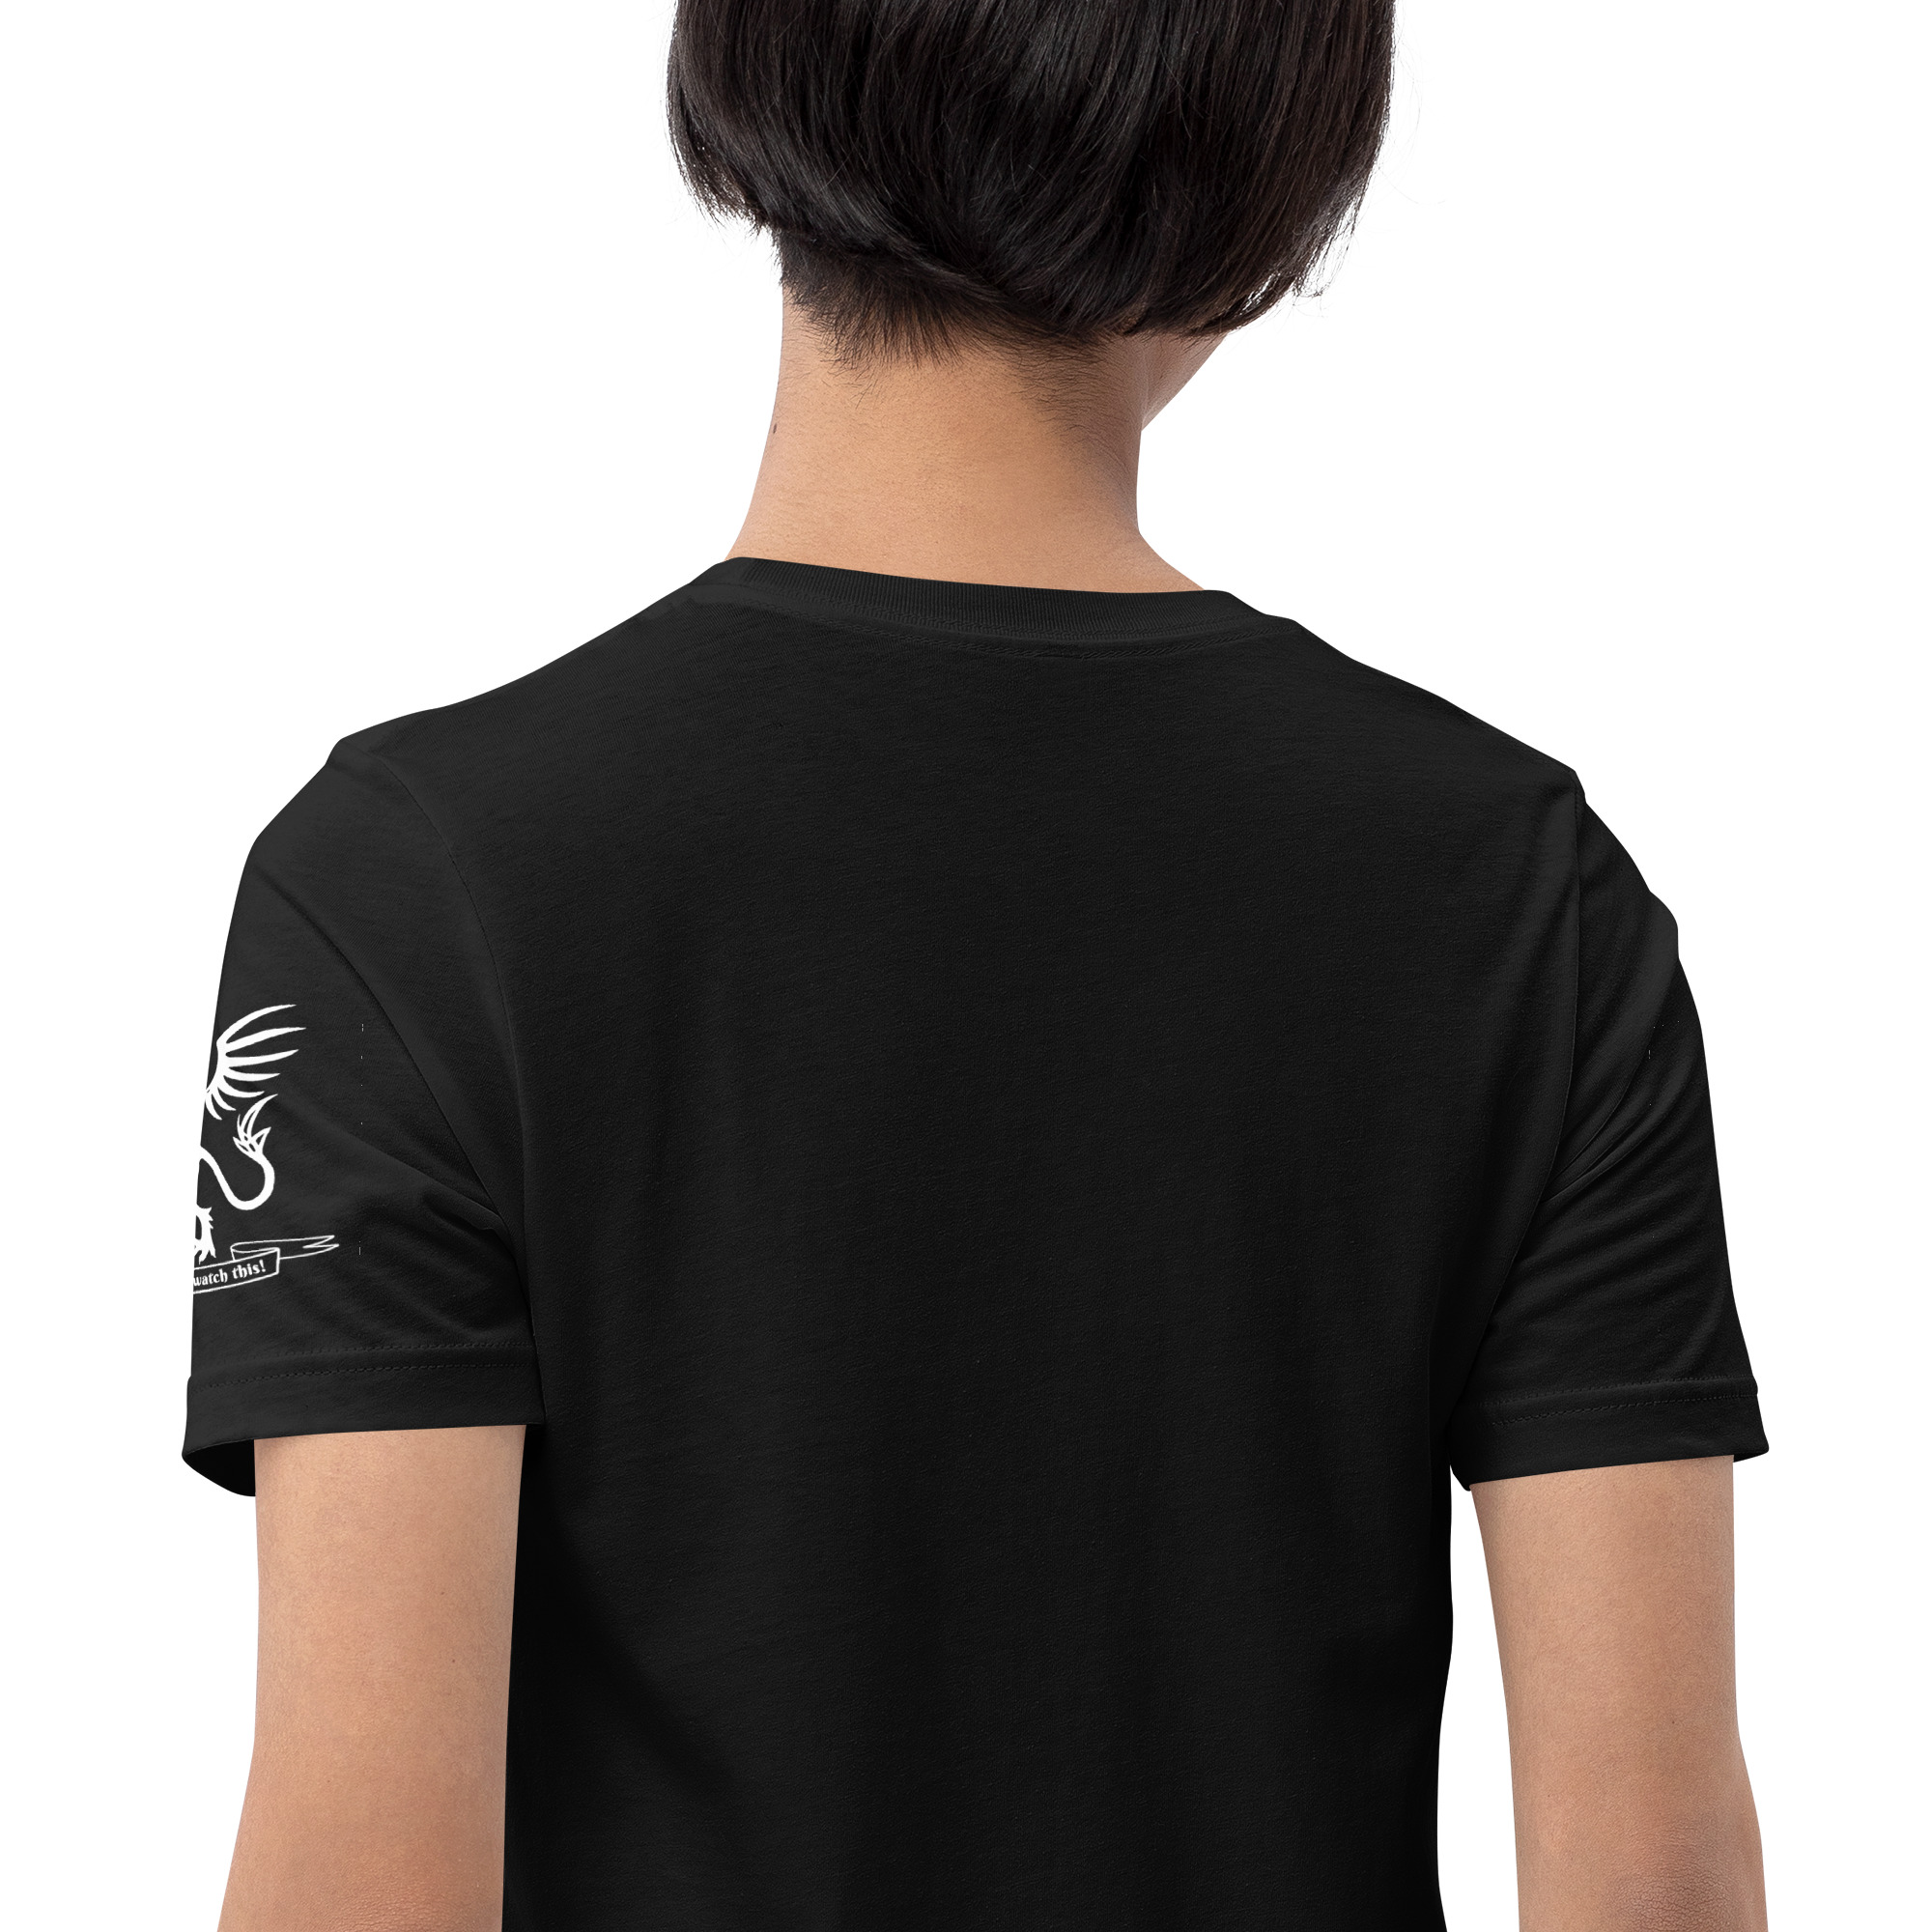 unisex-staple-t-shirt-black-zoomed-in-6442ceeb5f934.jpg